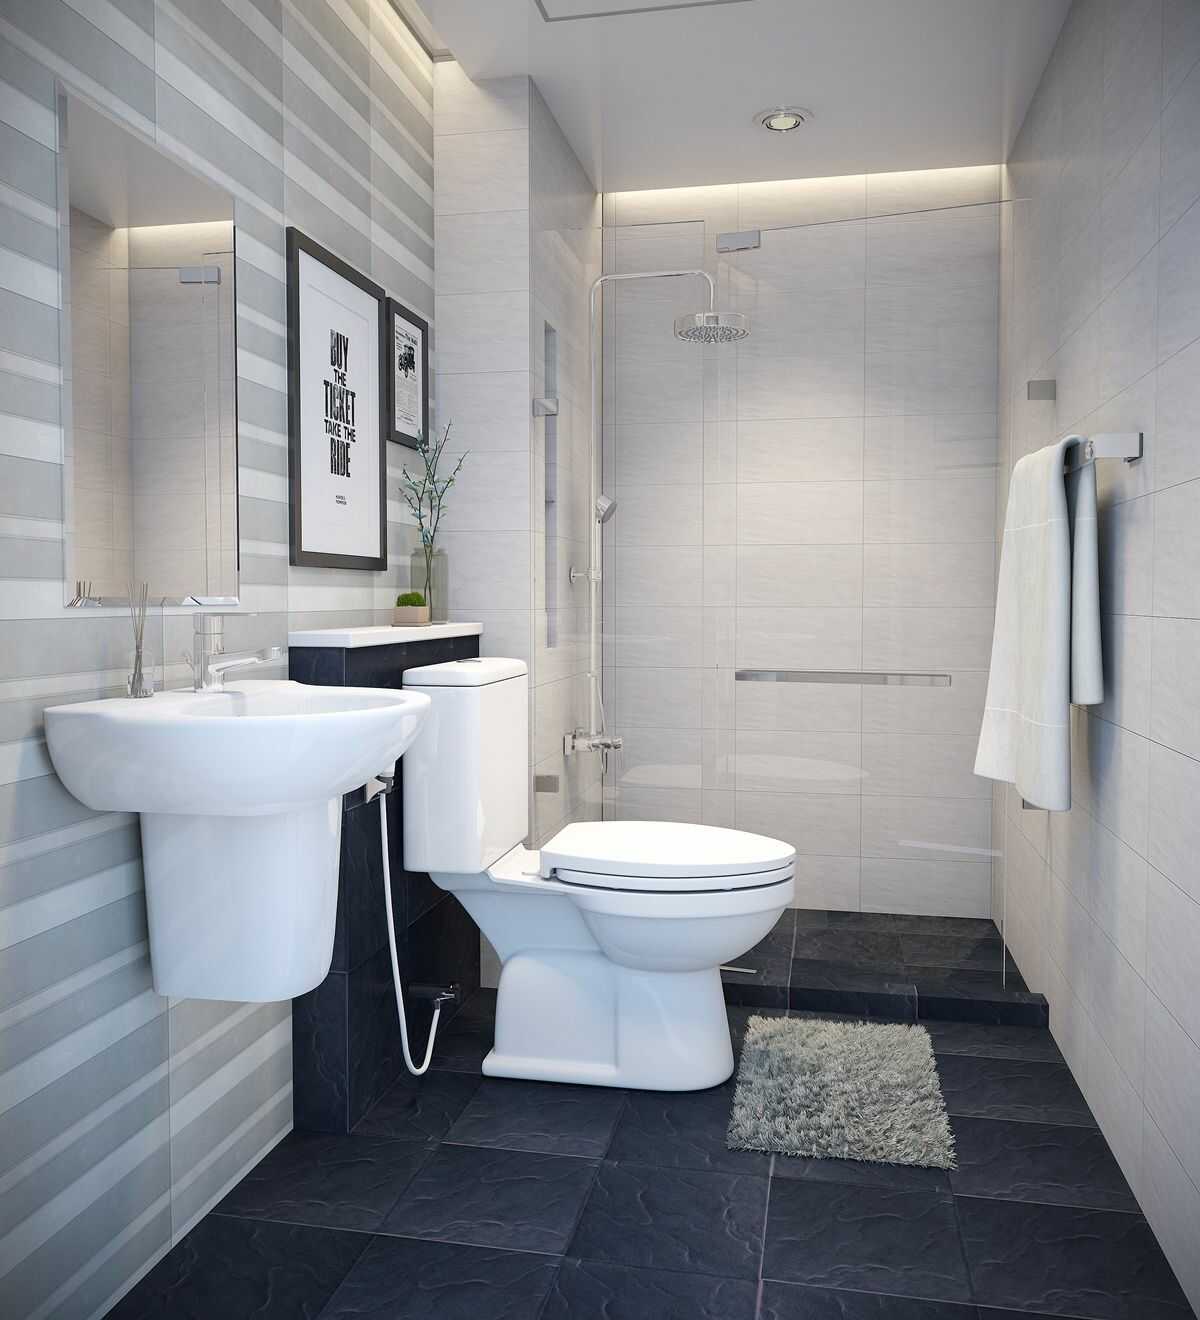 Thiết bị vệ sinh cho nhà tắm diện tích nhỏ cũng cần được lựa chọn một cách tinh tế để tạo ra không gian phù hợp với không gian nhà vệ sinh hạn chế. Chúng tôi có rất nhiều lựa chọn cho những thiết bị vệ sinh và phụ kiện nhỏ gọn để phù hợp với nhu cầu của bạn. Hãy xem hình ảnh để tìm kiếm những lựa chọn phù hợp cho nhà tắm của bạn.